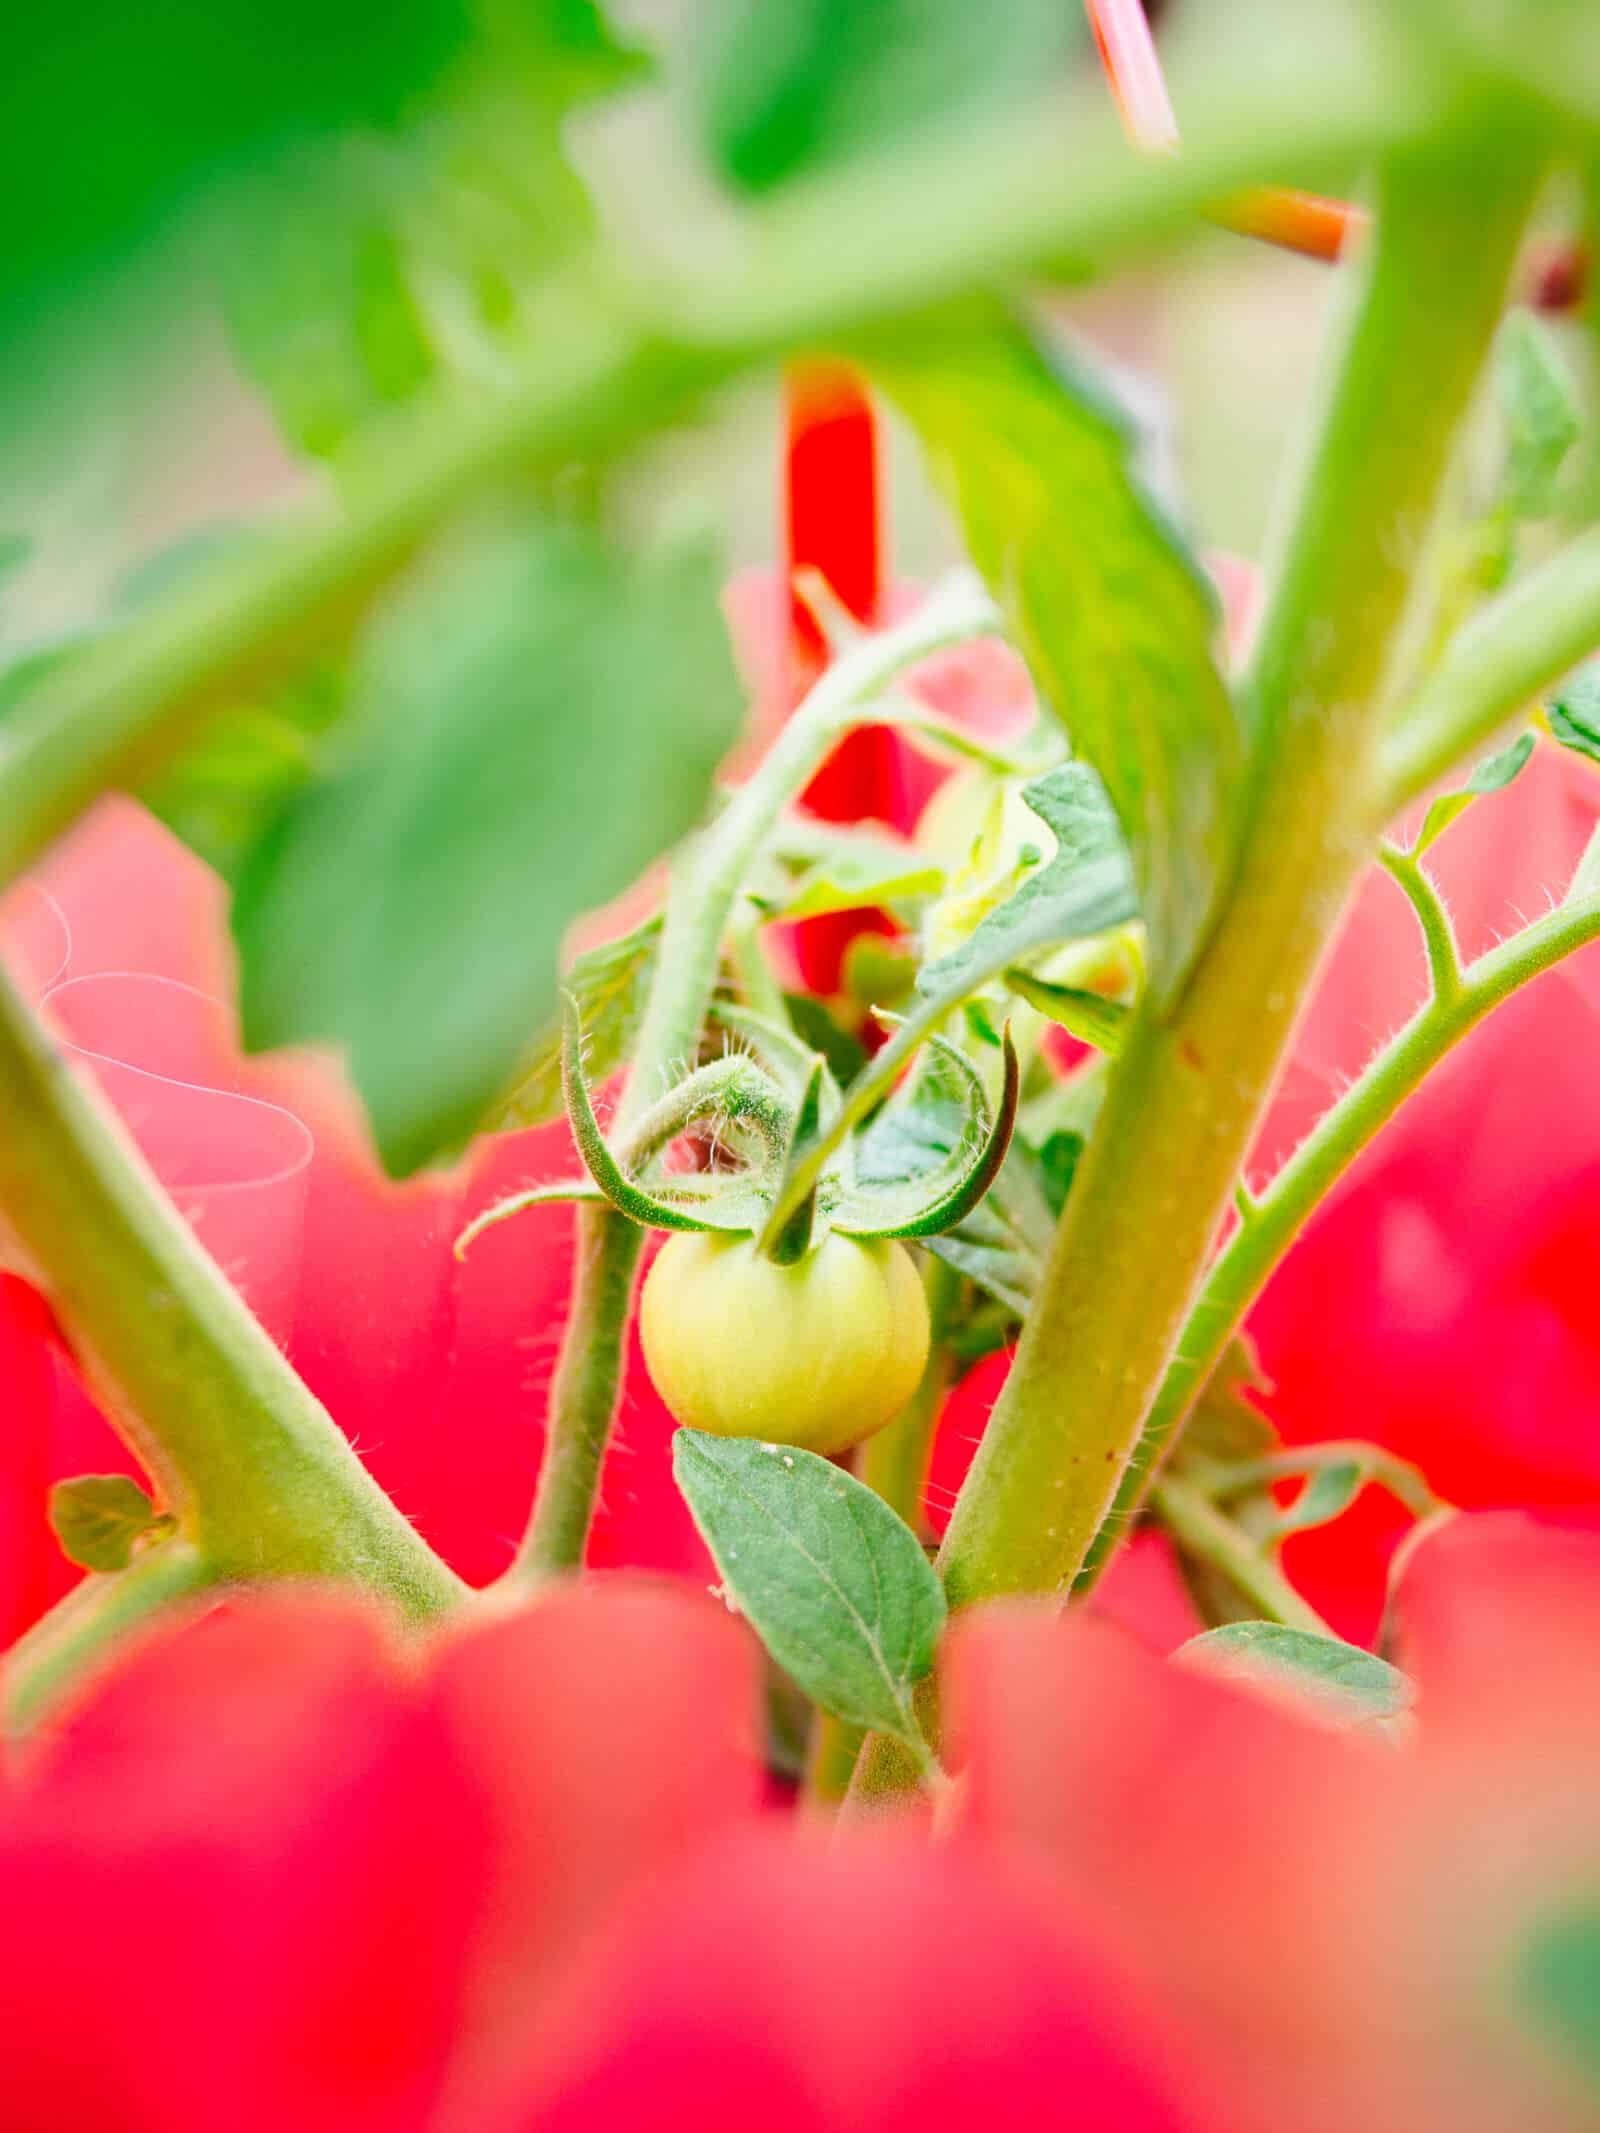 Cherry tomato plant